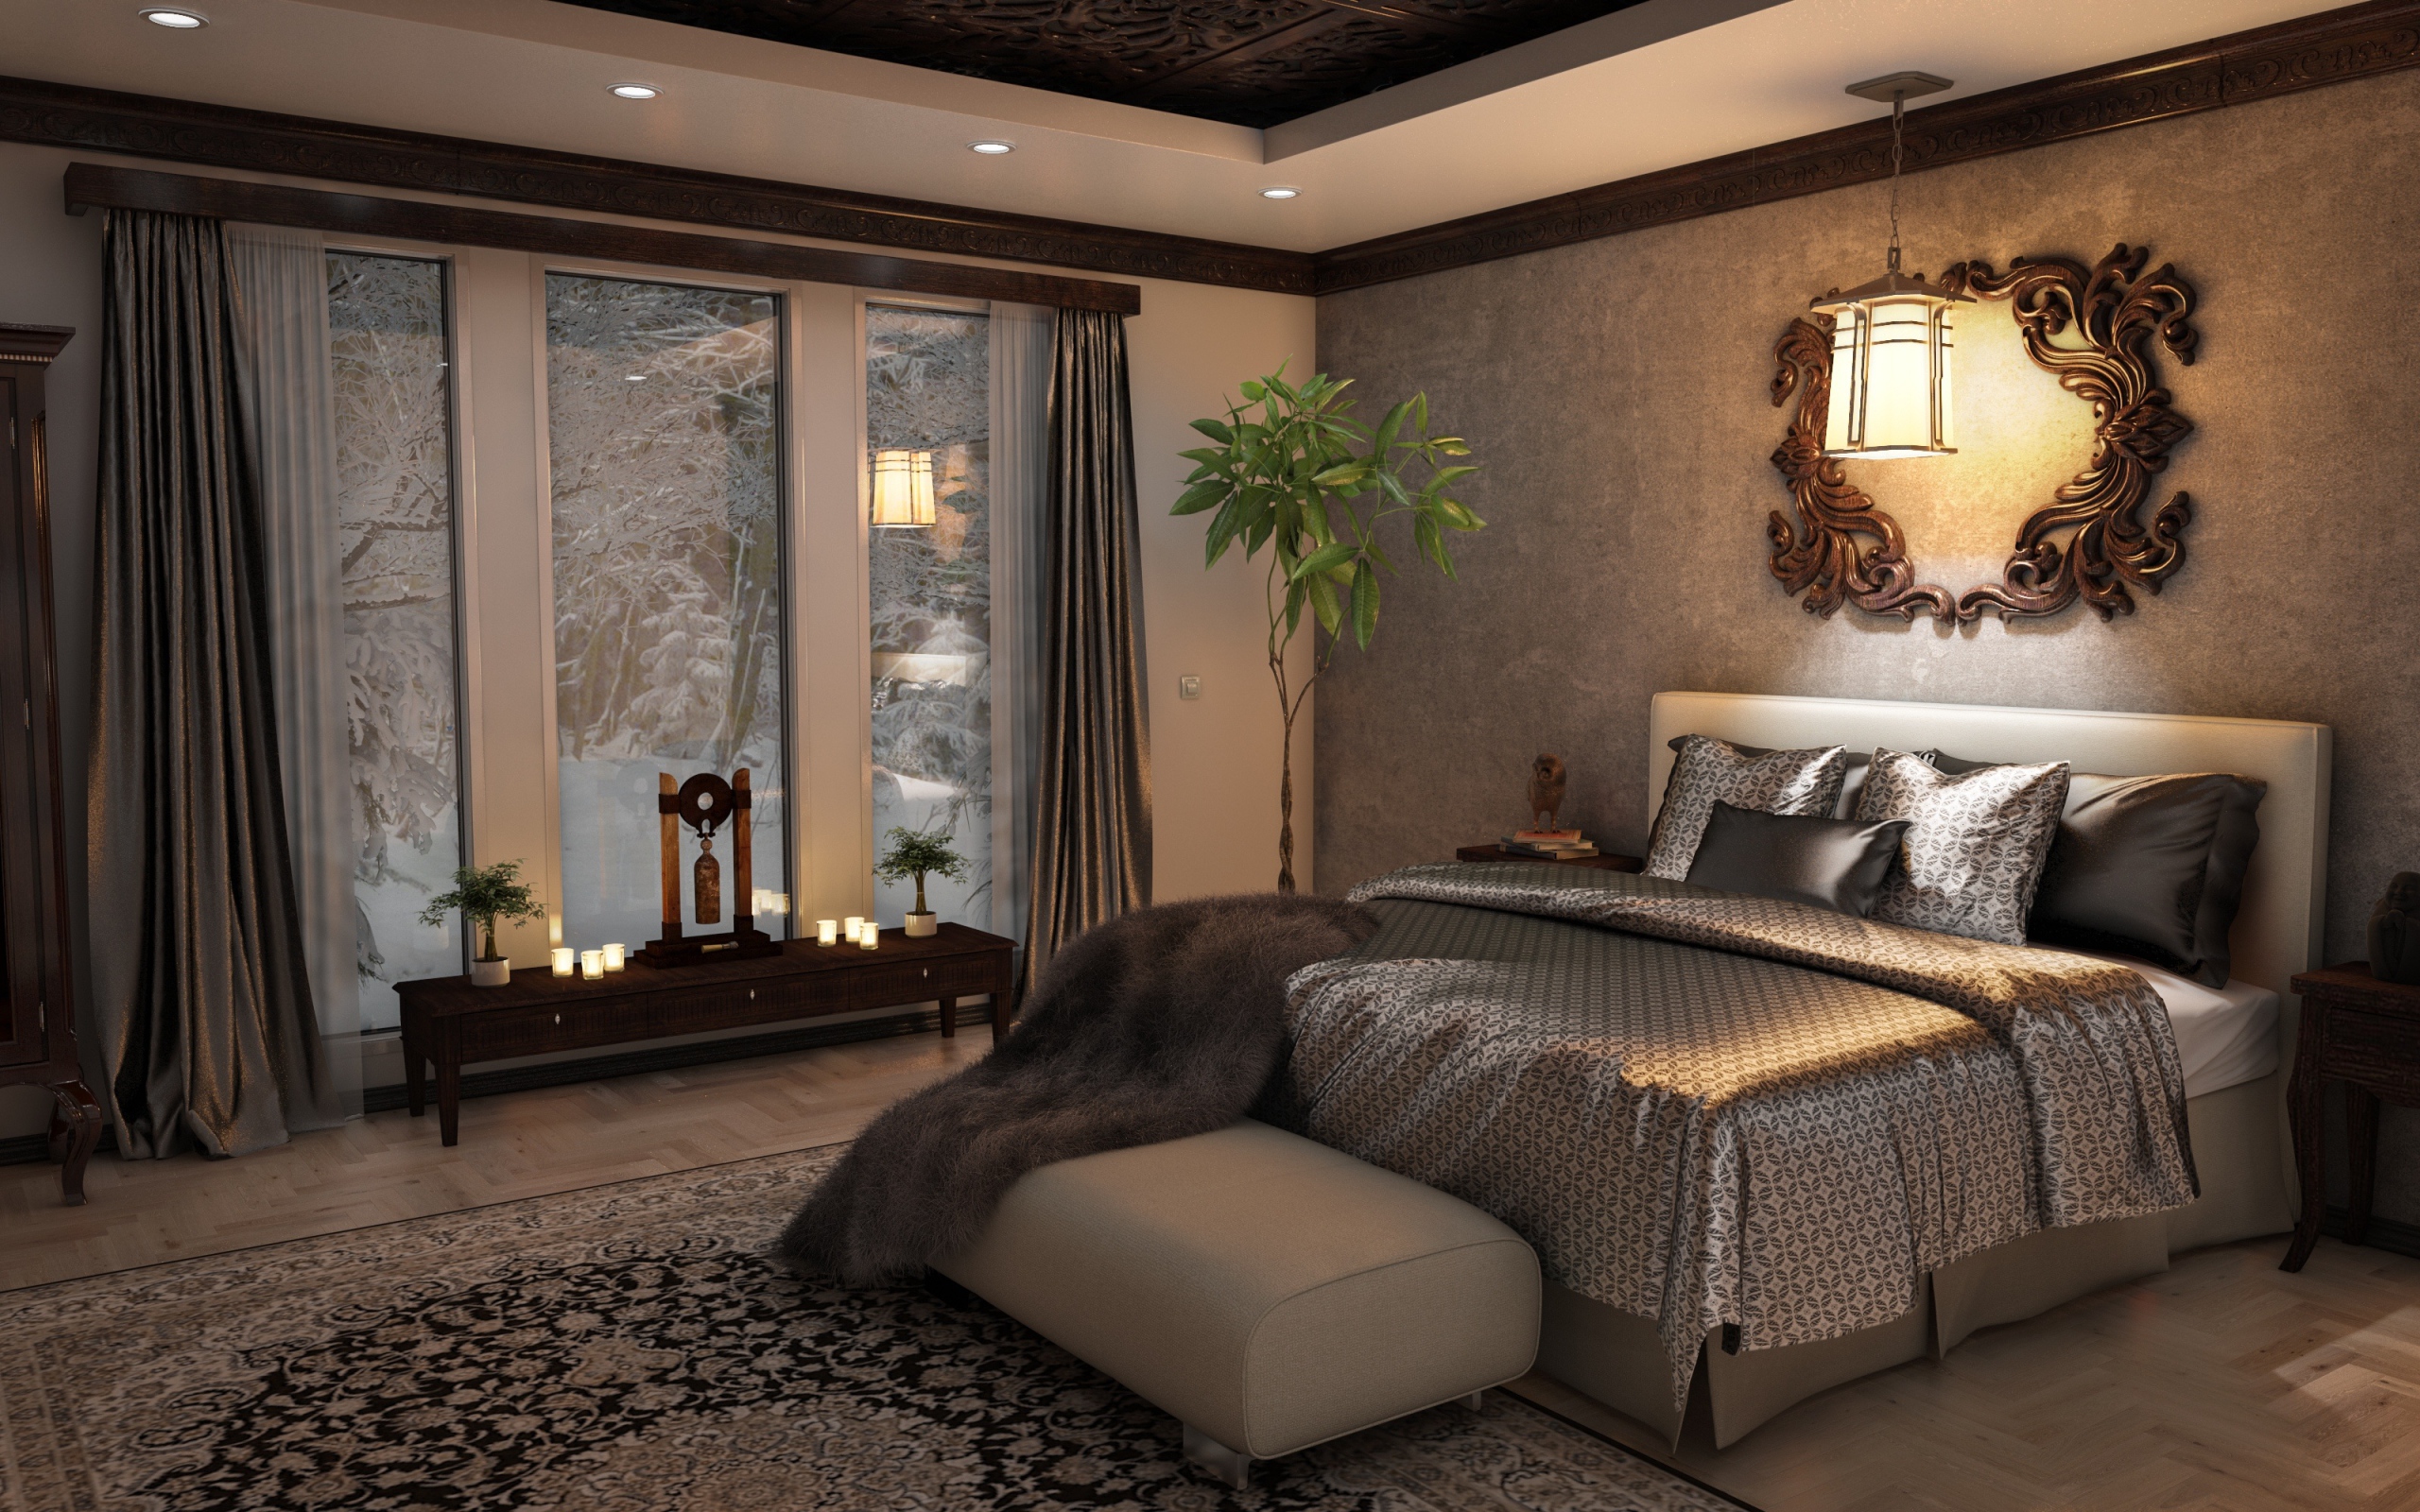 Большая кровать с красивым покрывалом в спальне с большим окном 